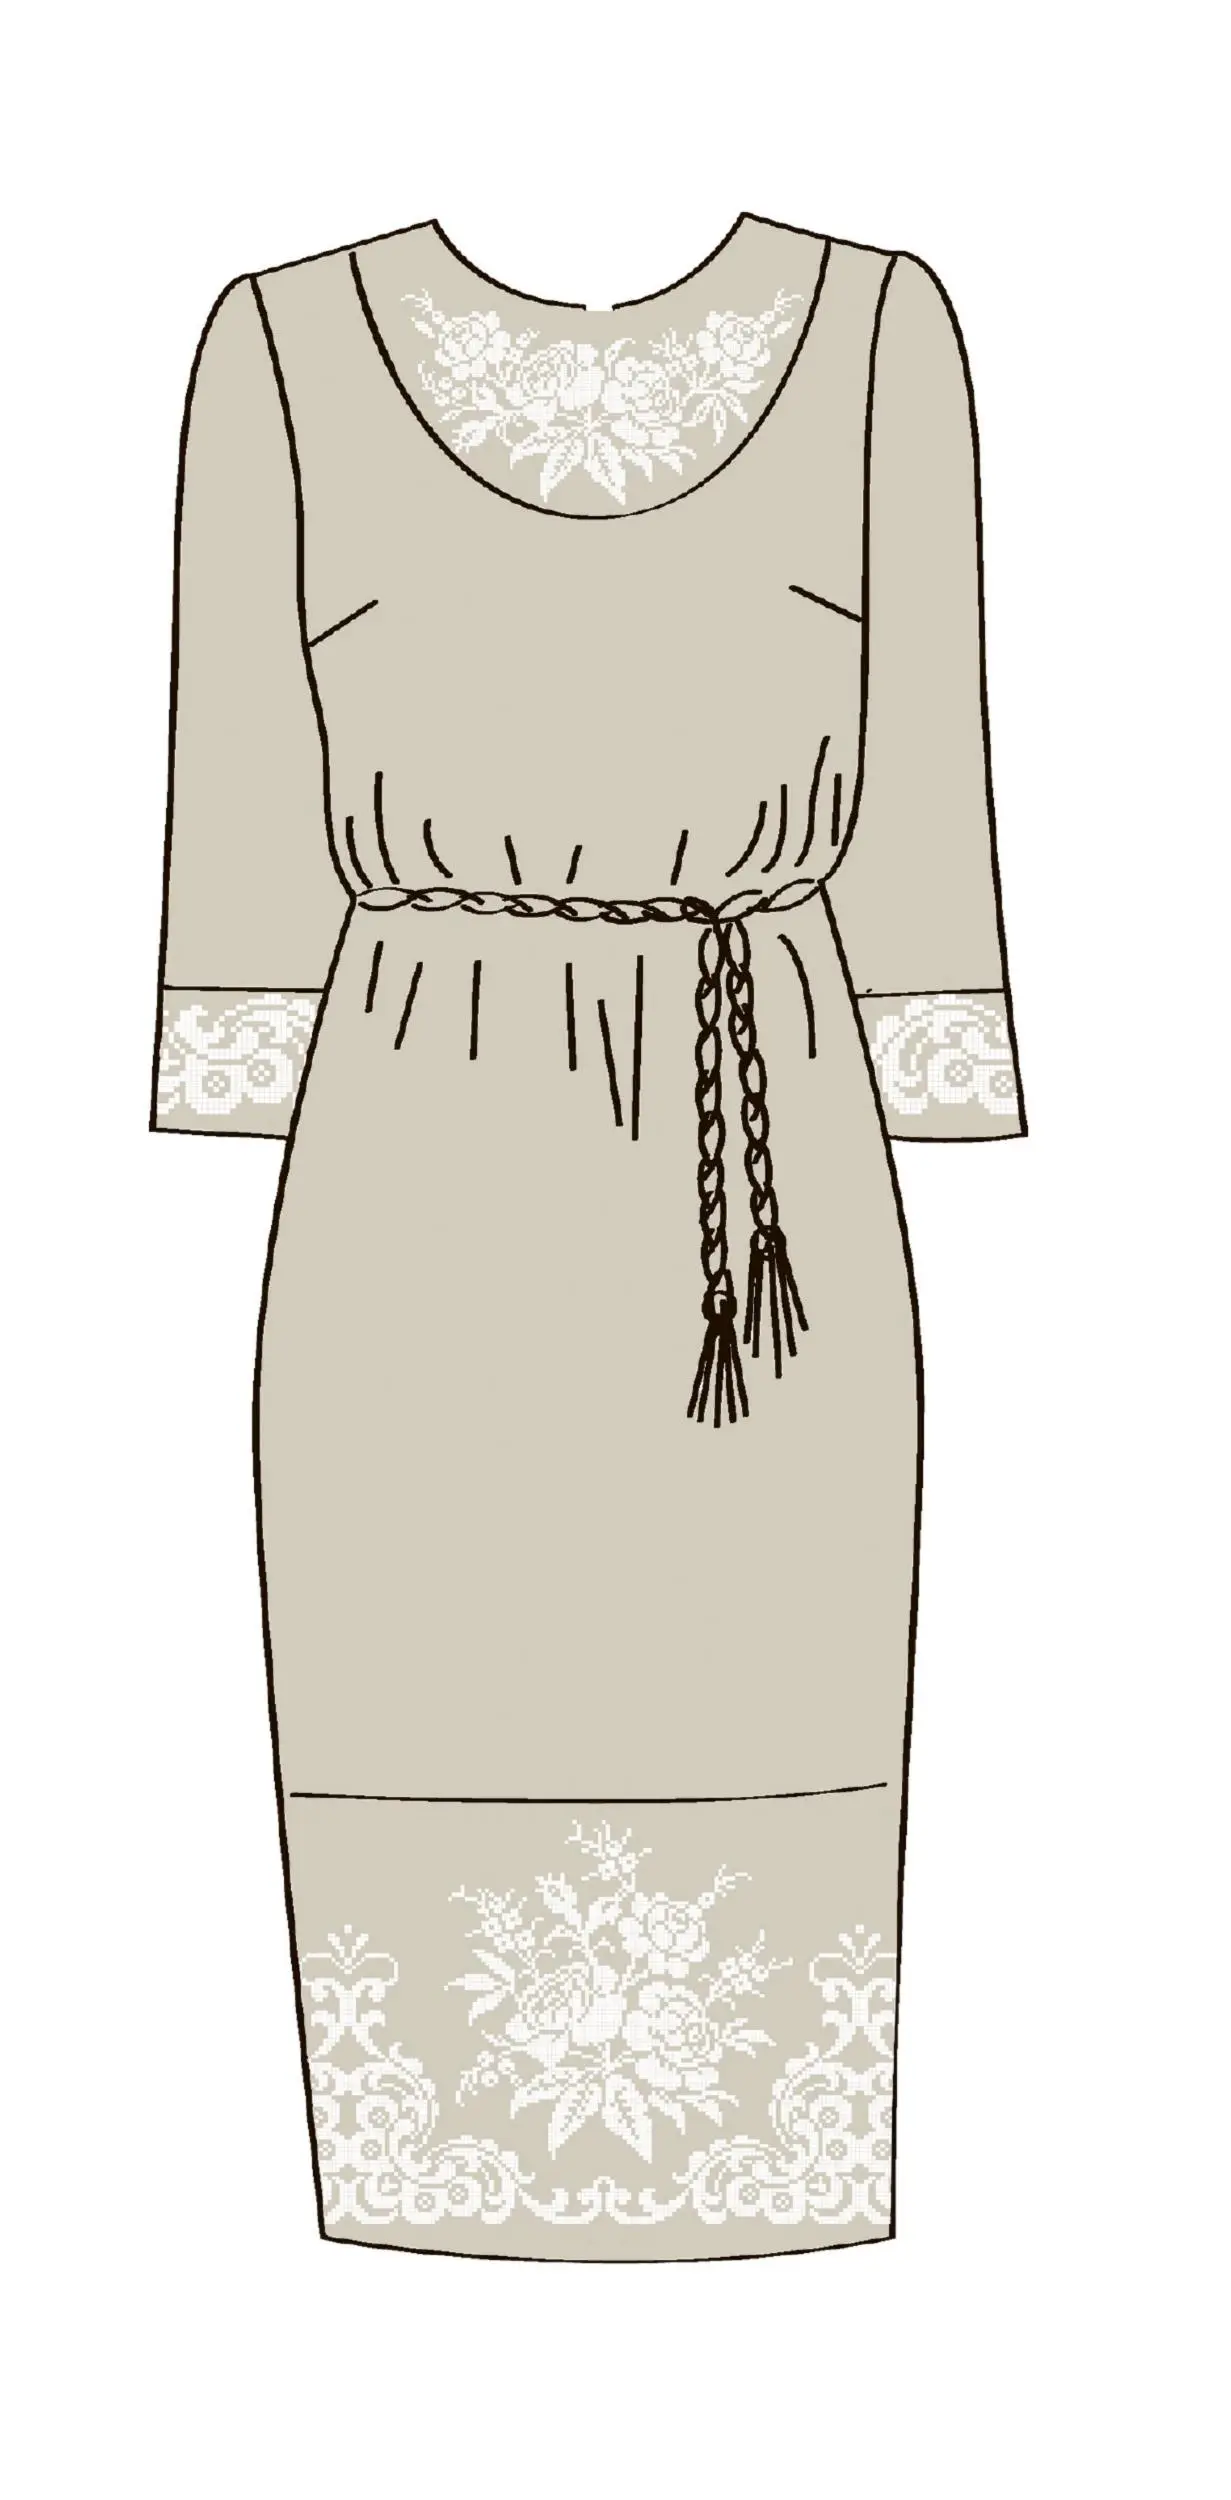 820-14/08 Плаття жіноче з поясом, льняне, розмір 40